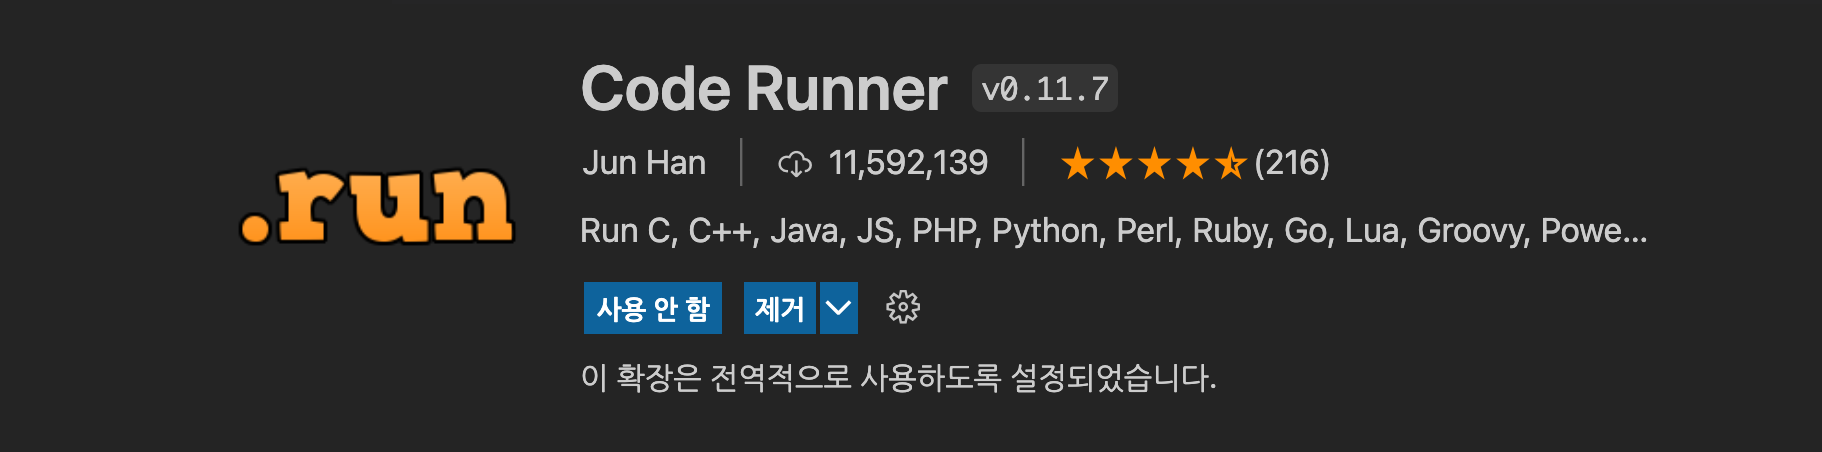 Code_Runner